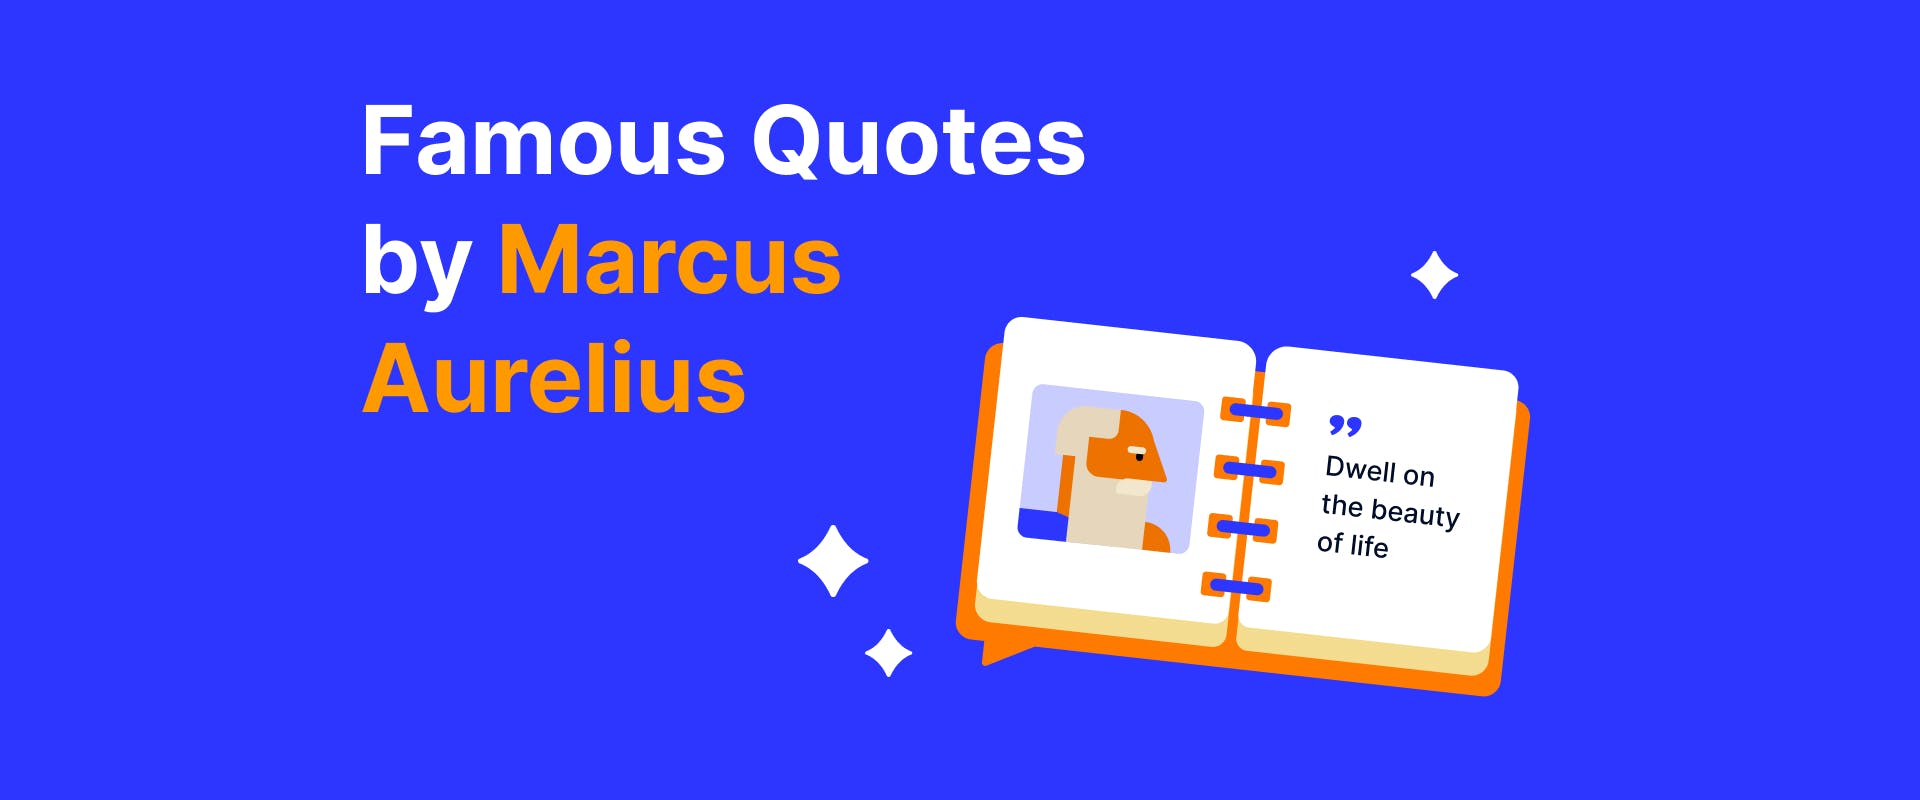 Famous quotes by Marcus Aurelius